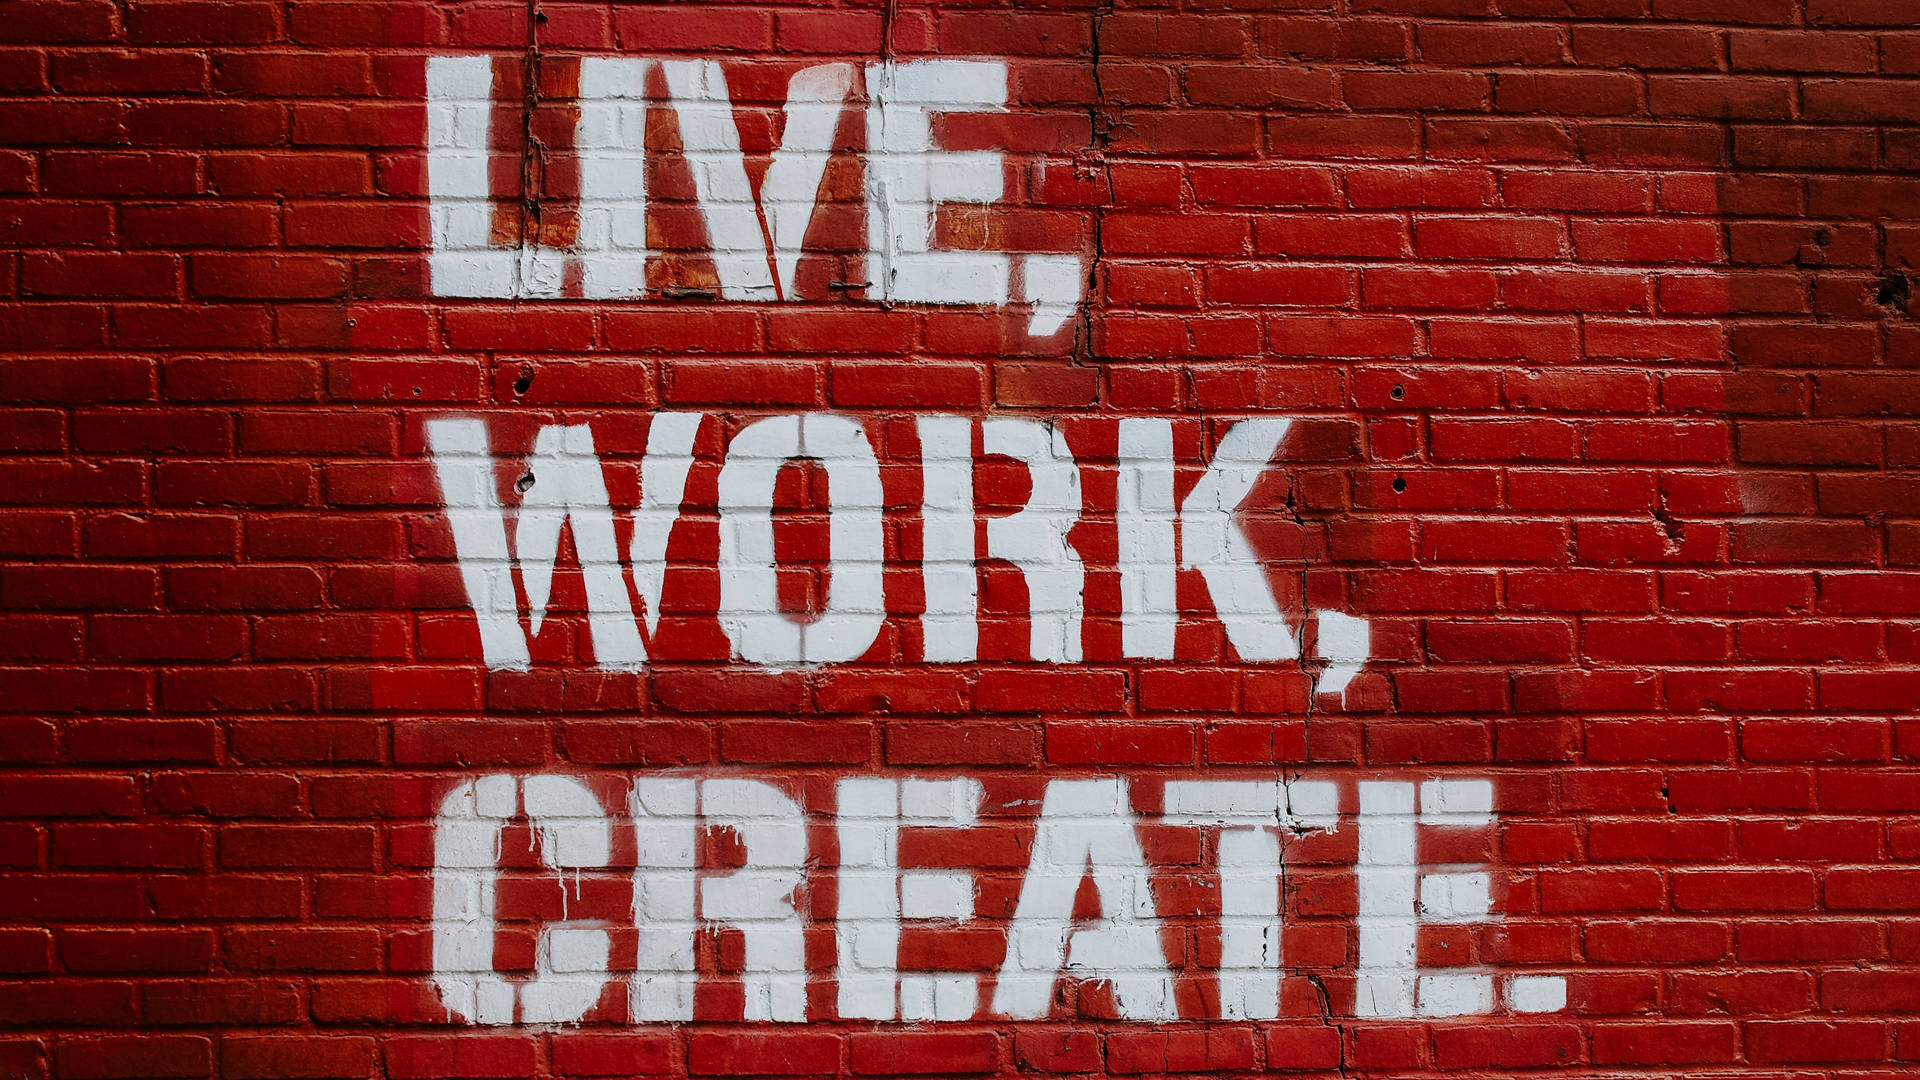 Live Work Create Wall